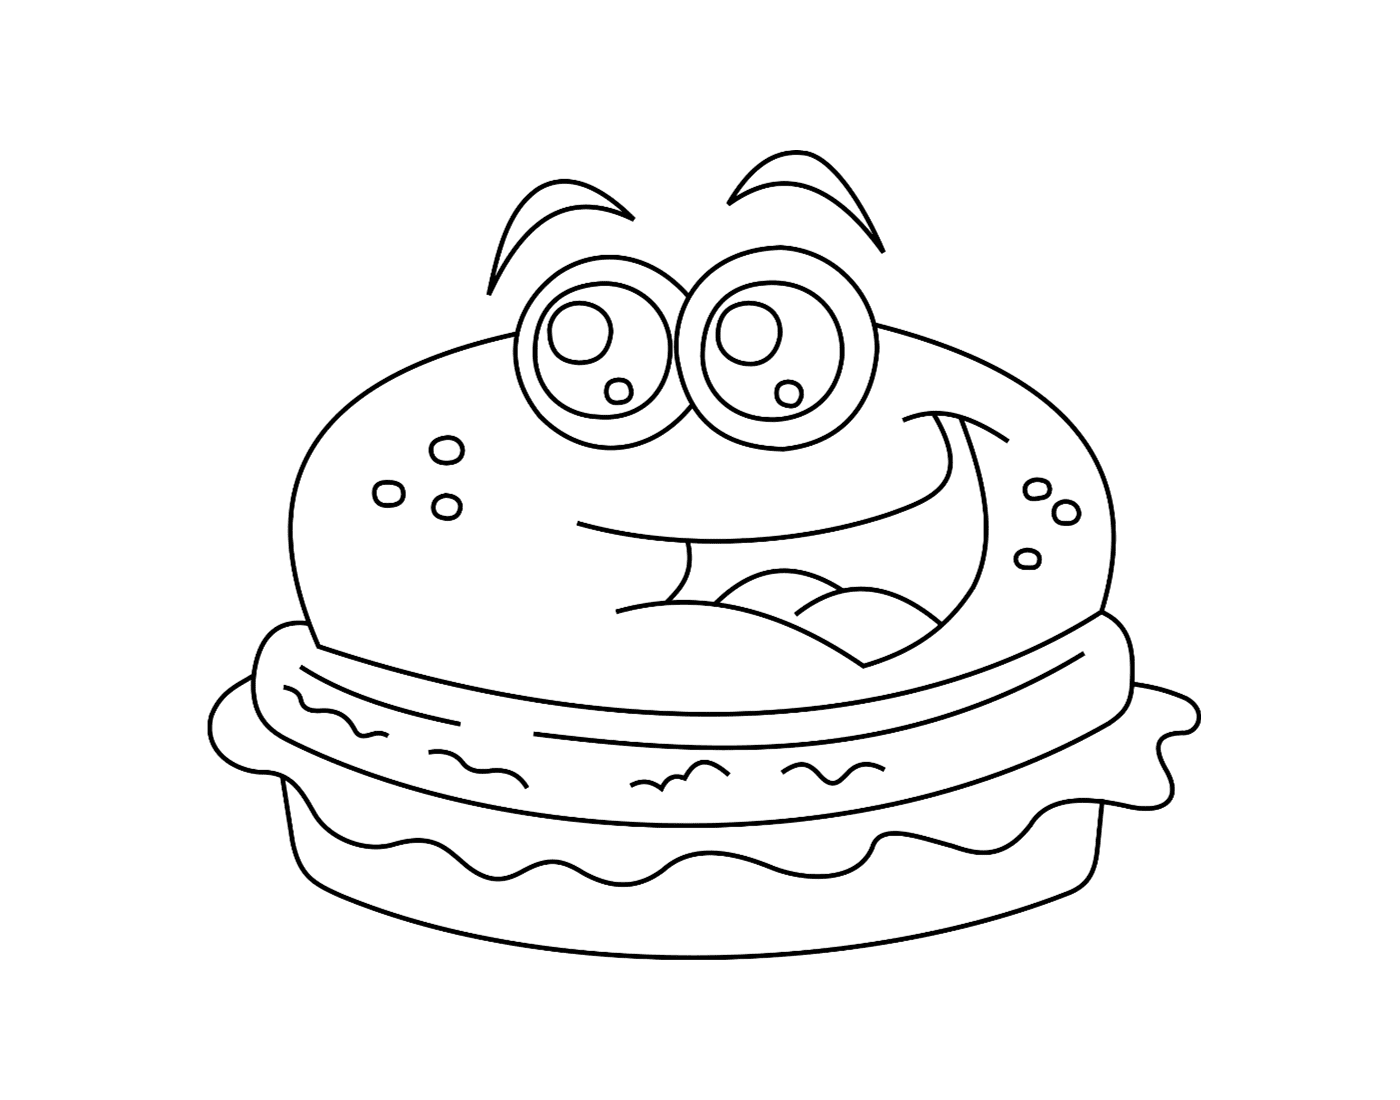   Un hamburger kawaii 